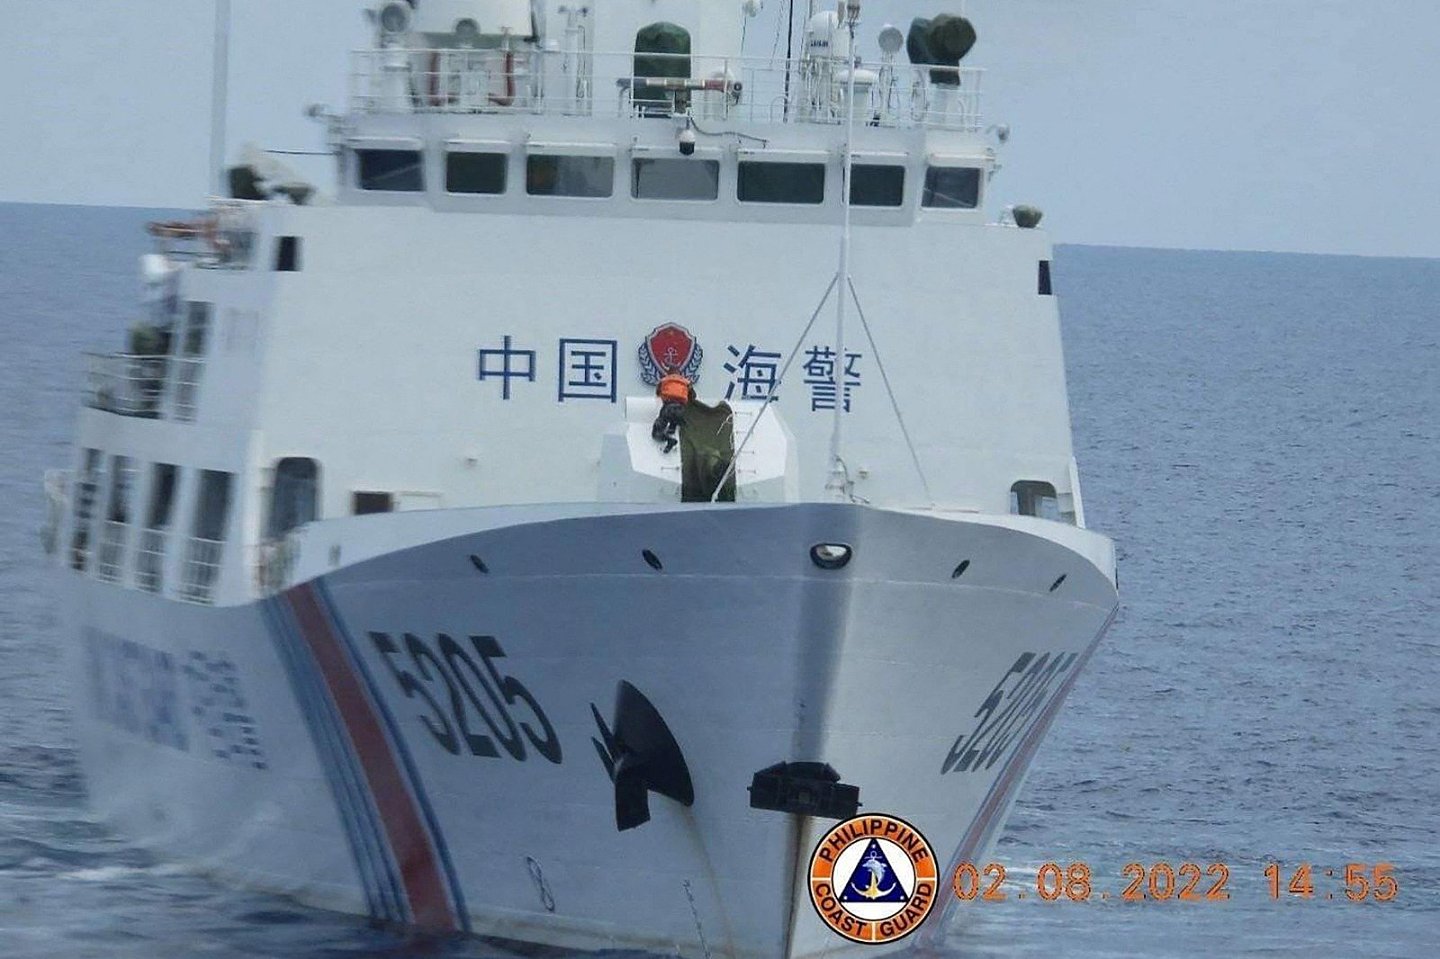 菲律宾海岸警卫队在周一发布这张去年8月8日拍摄的照片，位于有争议的南中国海南沙群岛的仁爱礁附近水域，中国海岸警卫队船只上的一名水手（身穿橙色背心）正在拆除其“70毫米海军武器”的外壳。（图取自菲律宾海岸警卫队/法新社）